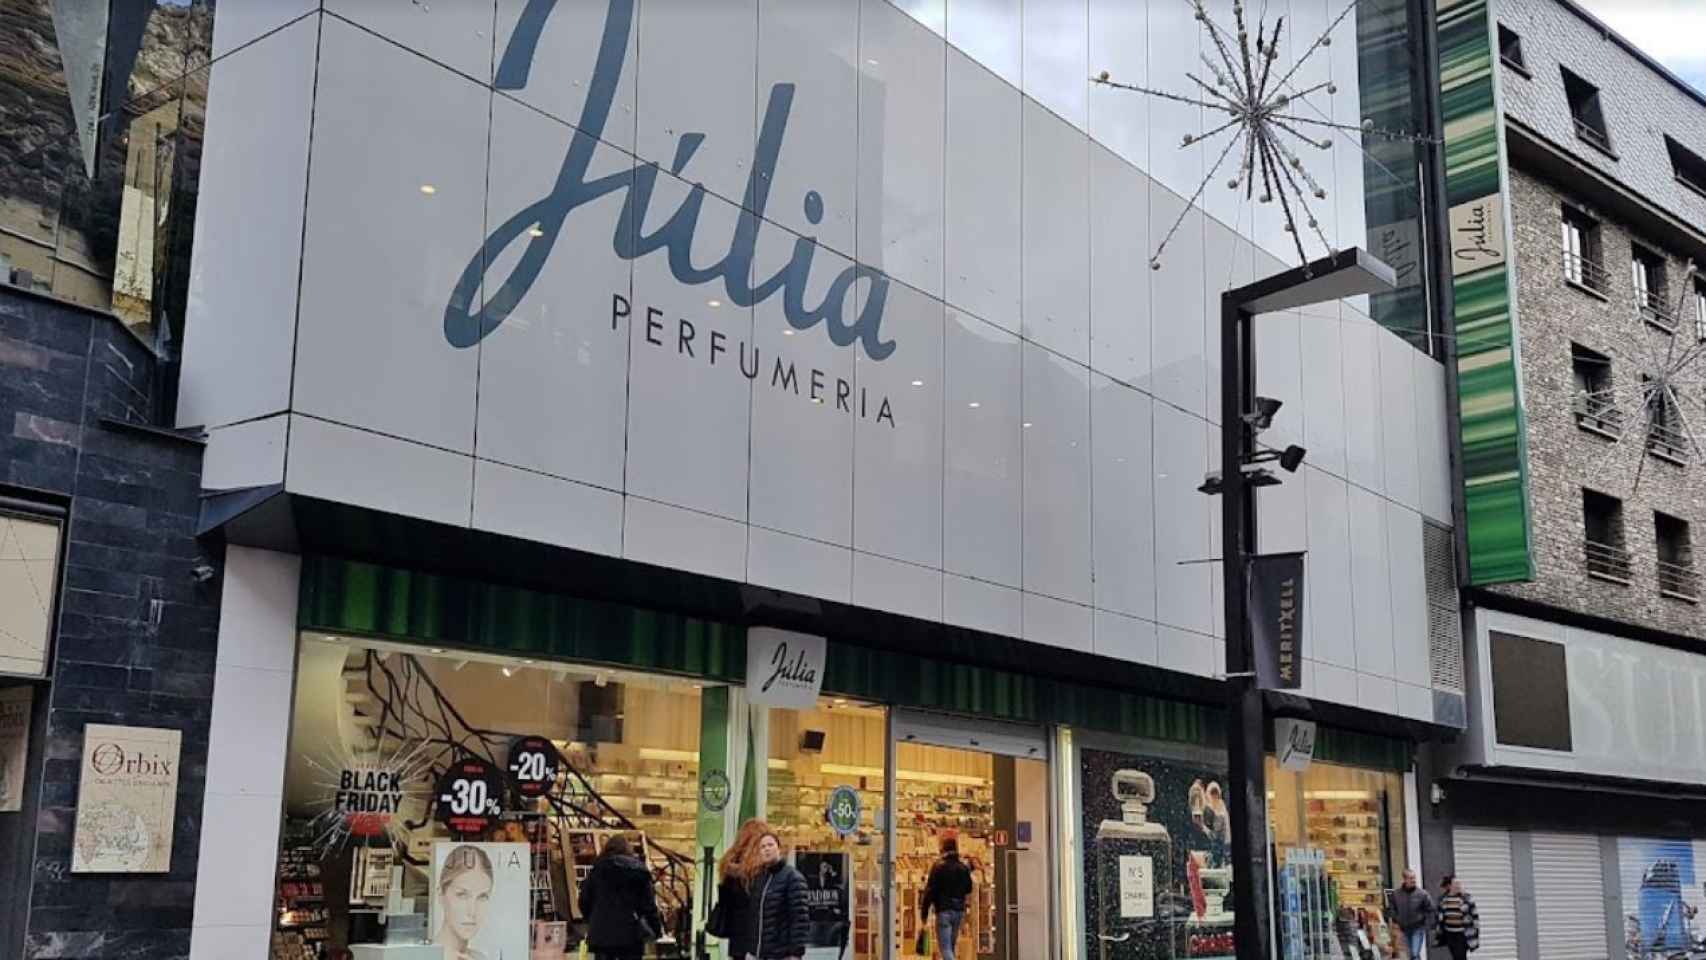 Las perfumerías Júlia au declarat pierderi pentru al doilea an